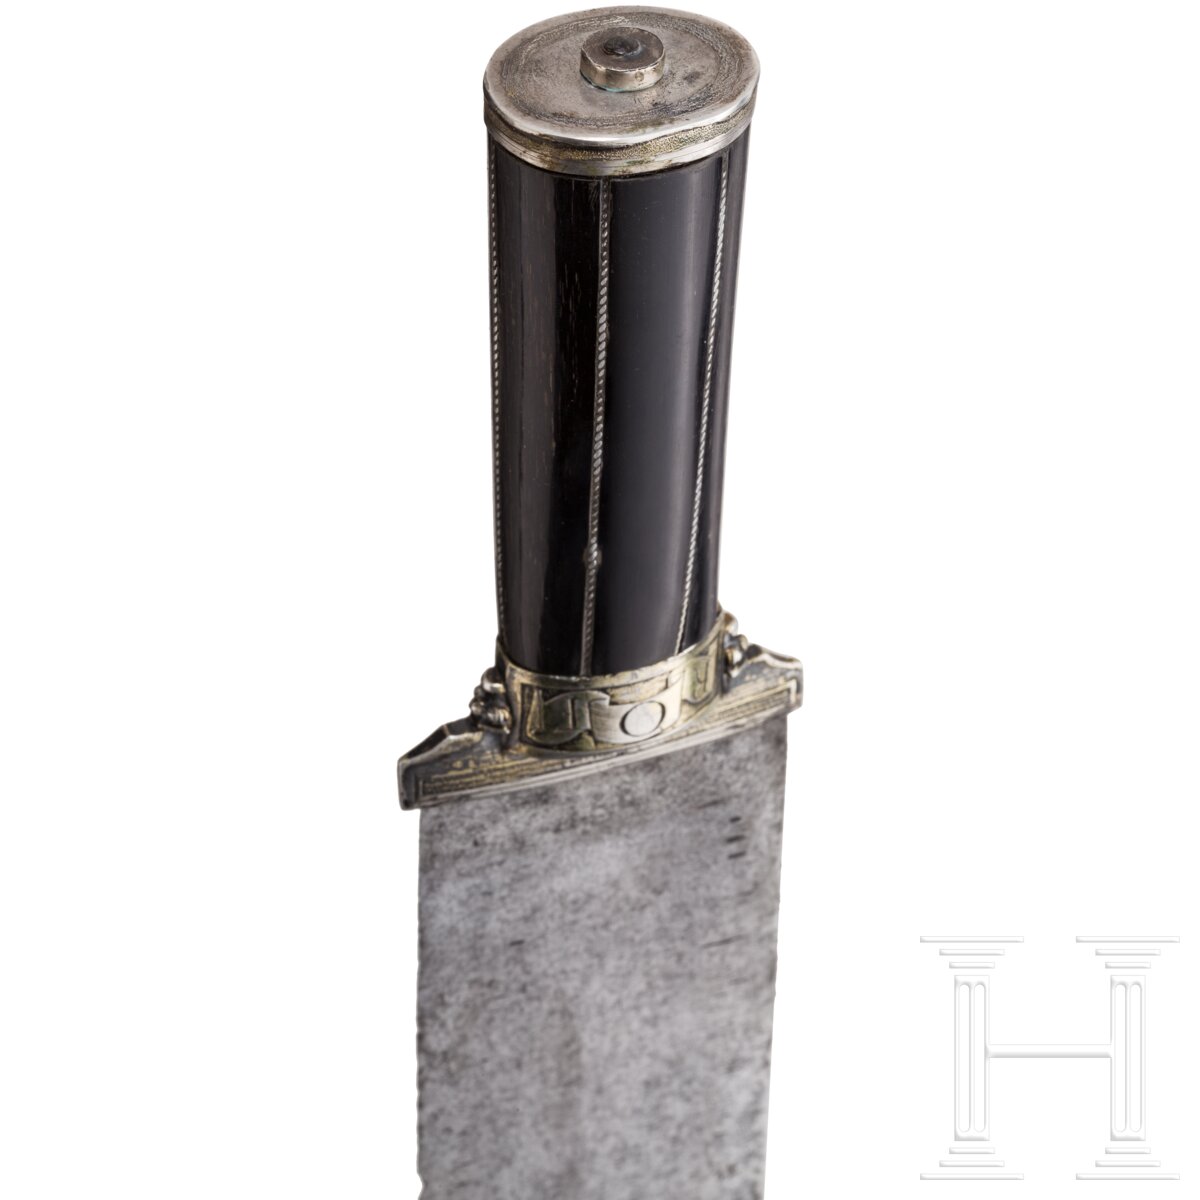 Silbermontiertes Vorlegemesser mit Griff aus Steinbockhorn, süddeutsch, 16. Jhdt. - Image 7 of 7